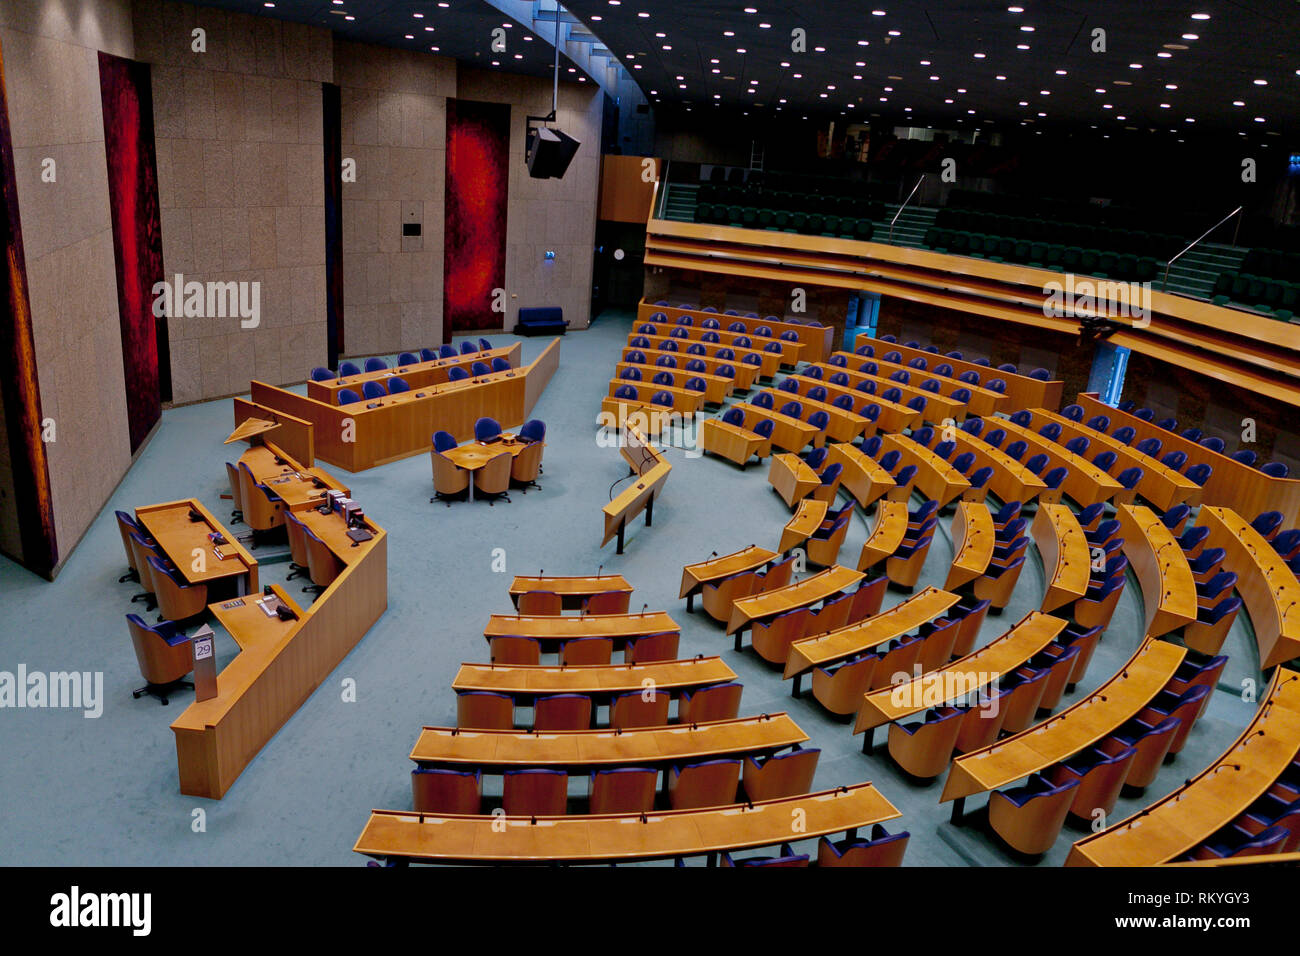 Large vue de l'intérieur de la salle plénière vide de la Chambre des représentants vu de dessus Banque D'Images